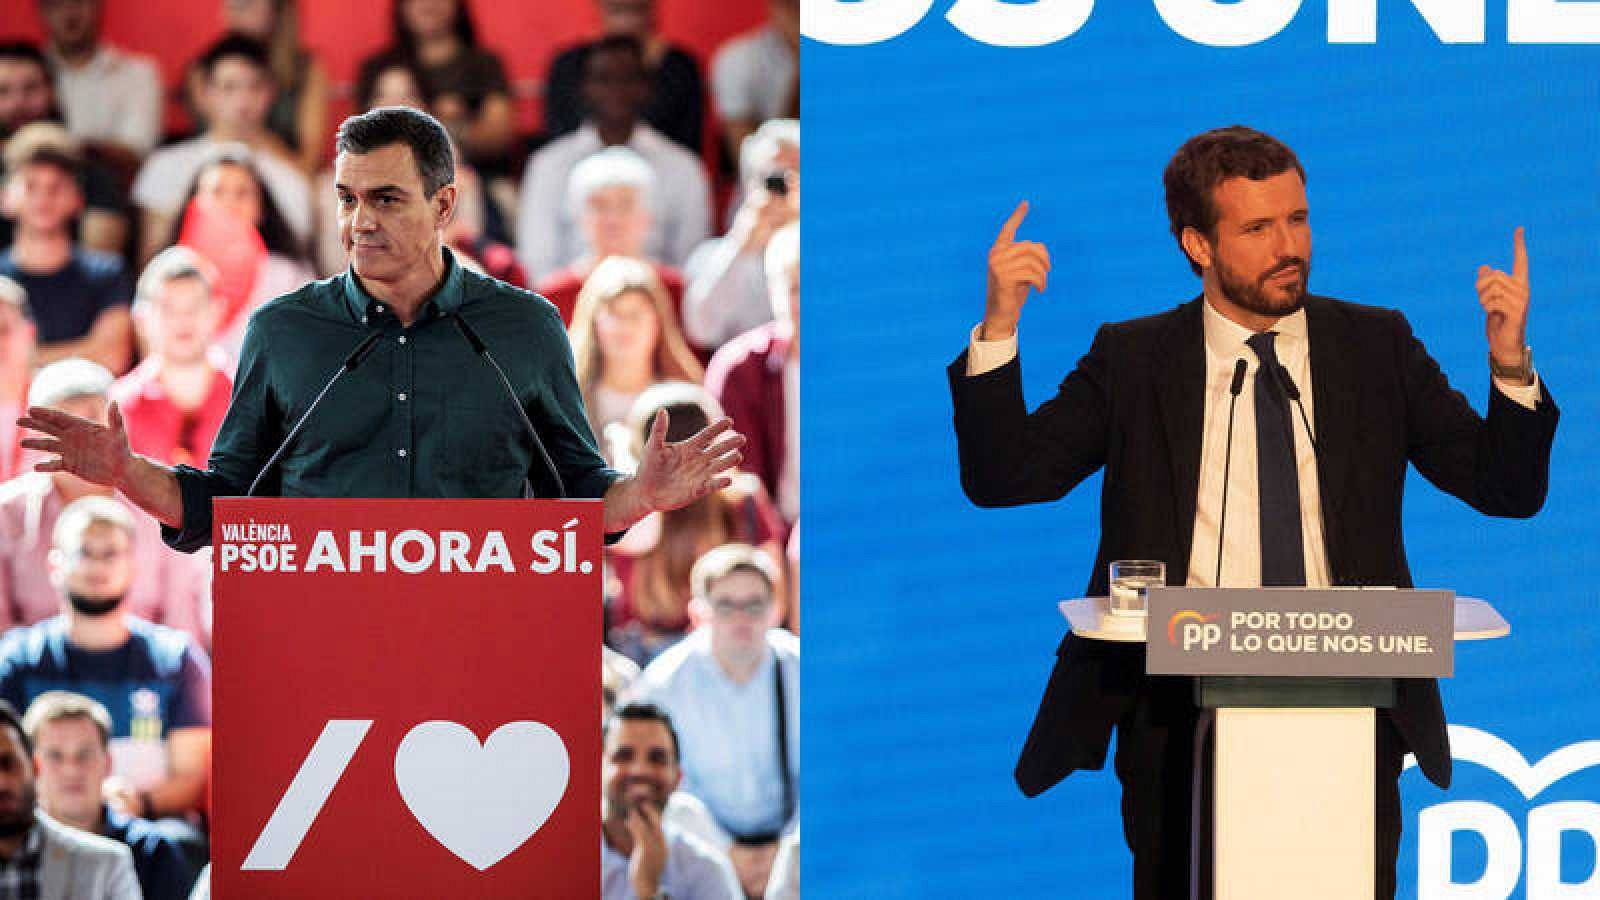 Elecciones 2019: Los líderes piden aglutinar el voto en el único fin de semana de campaña electoral - RTVE.es